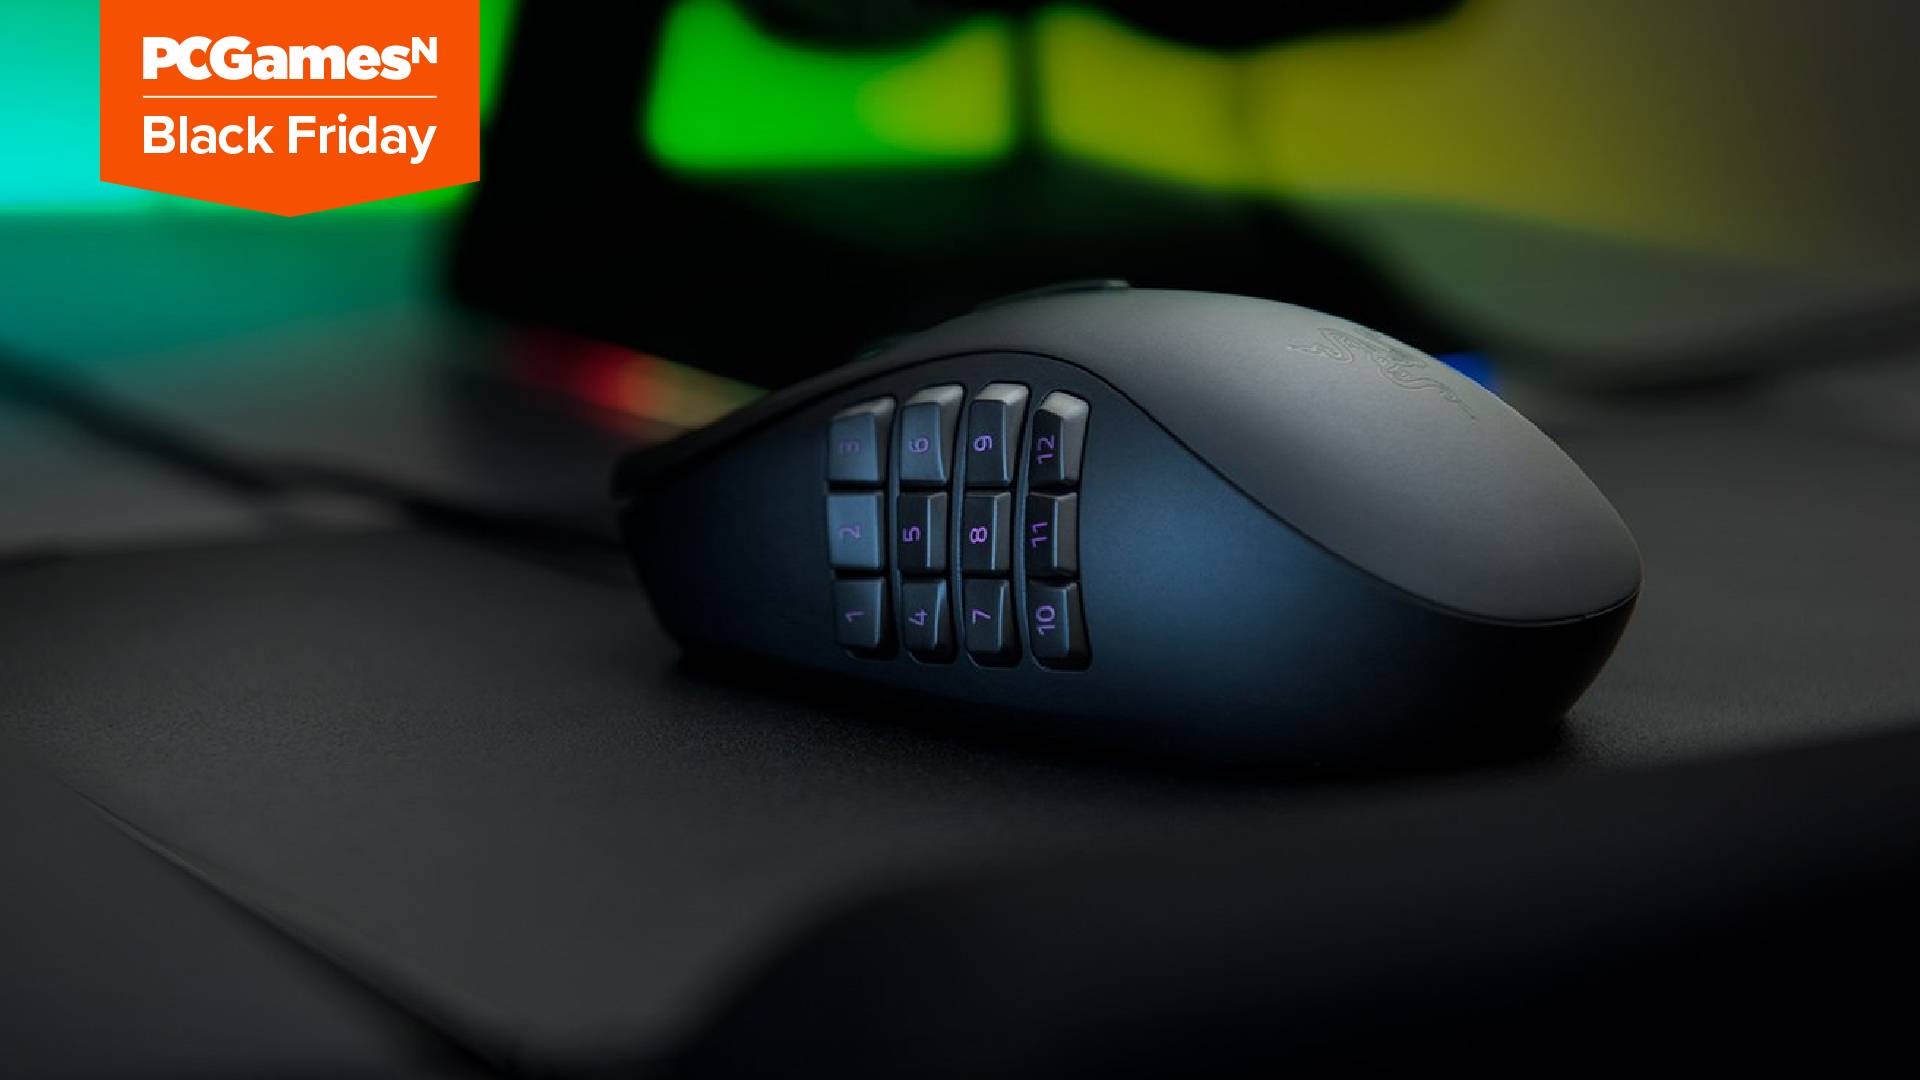 Celebrate Black Friday with 20% off Razer's Naga Trinity gaming mouse on Amazon